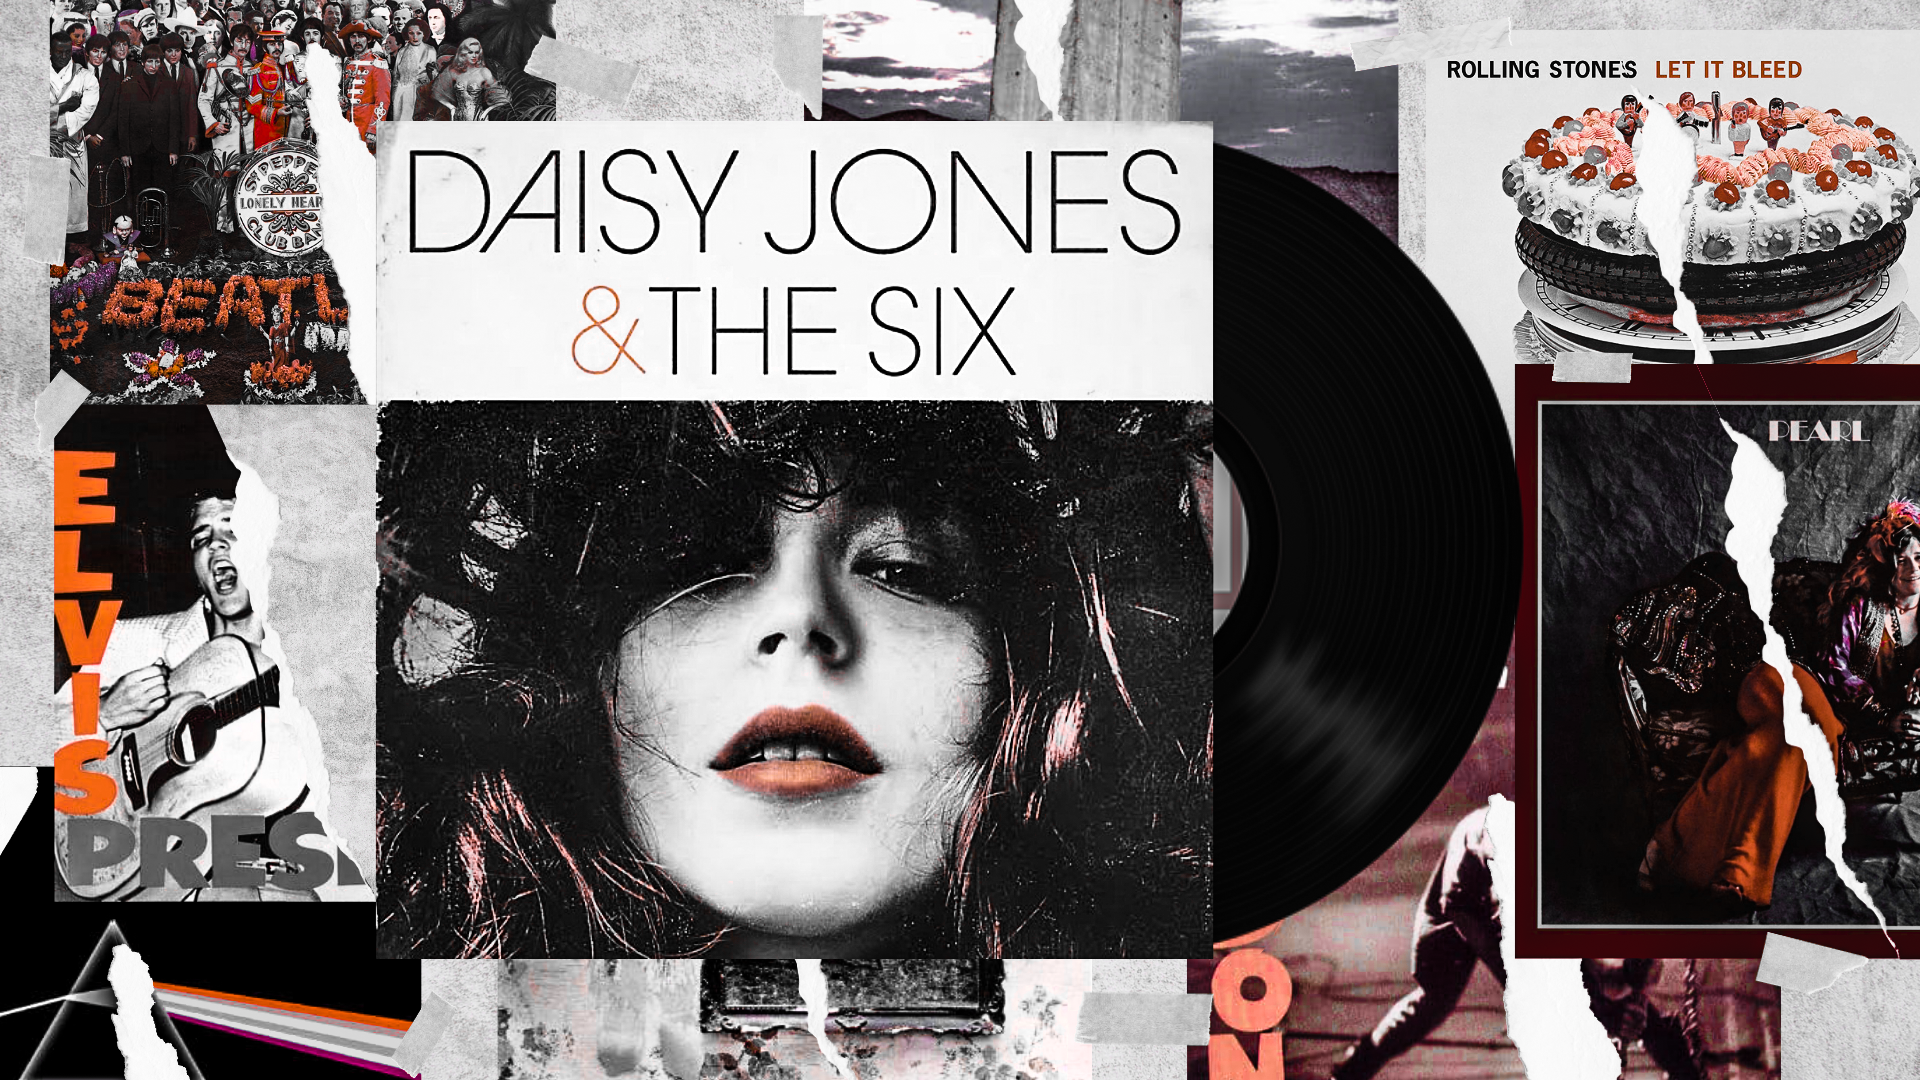 A imagem é uma colagem de diversas capas de álbuns rasgadas. No centro, a capa de Daisy Jones & The Six está escrita em letras pretas, e embaixo está o rosto de uma mulher branca com nariz fino e batom vermelho.